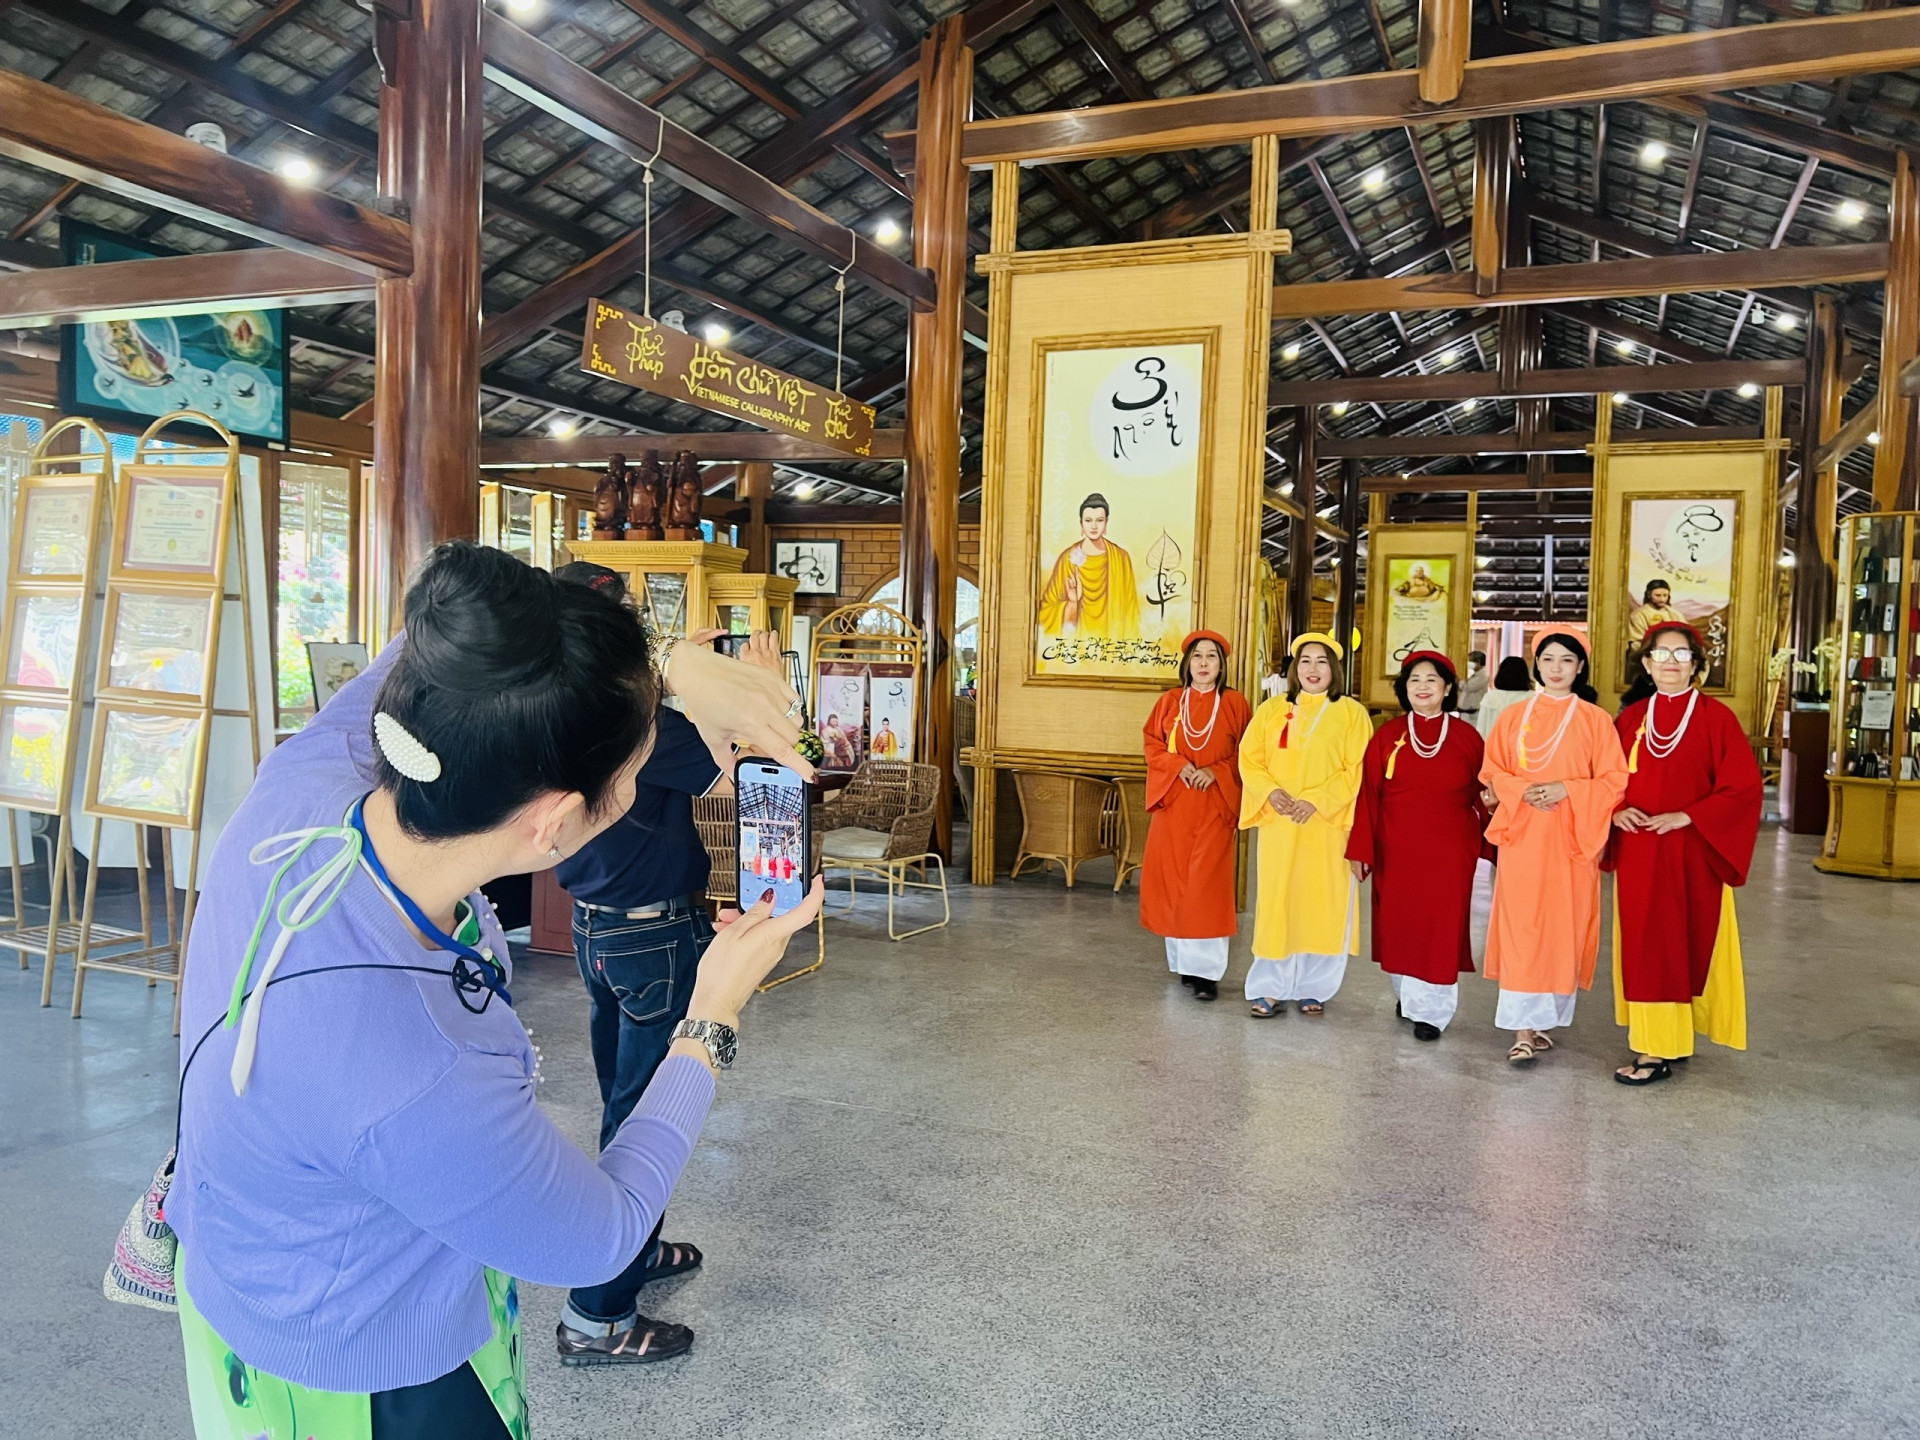 Nhiều du khách thuê những bộ áo dài theo phong cách xưa để chụp ảnh